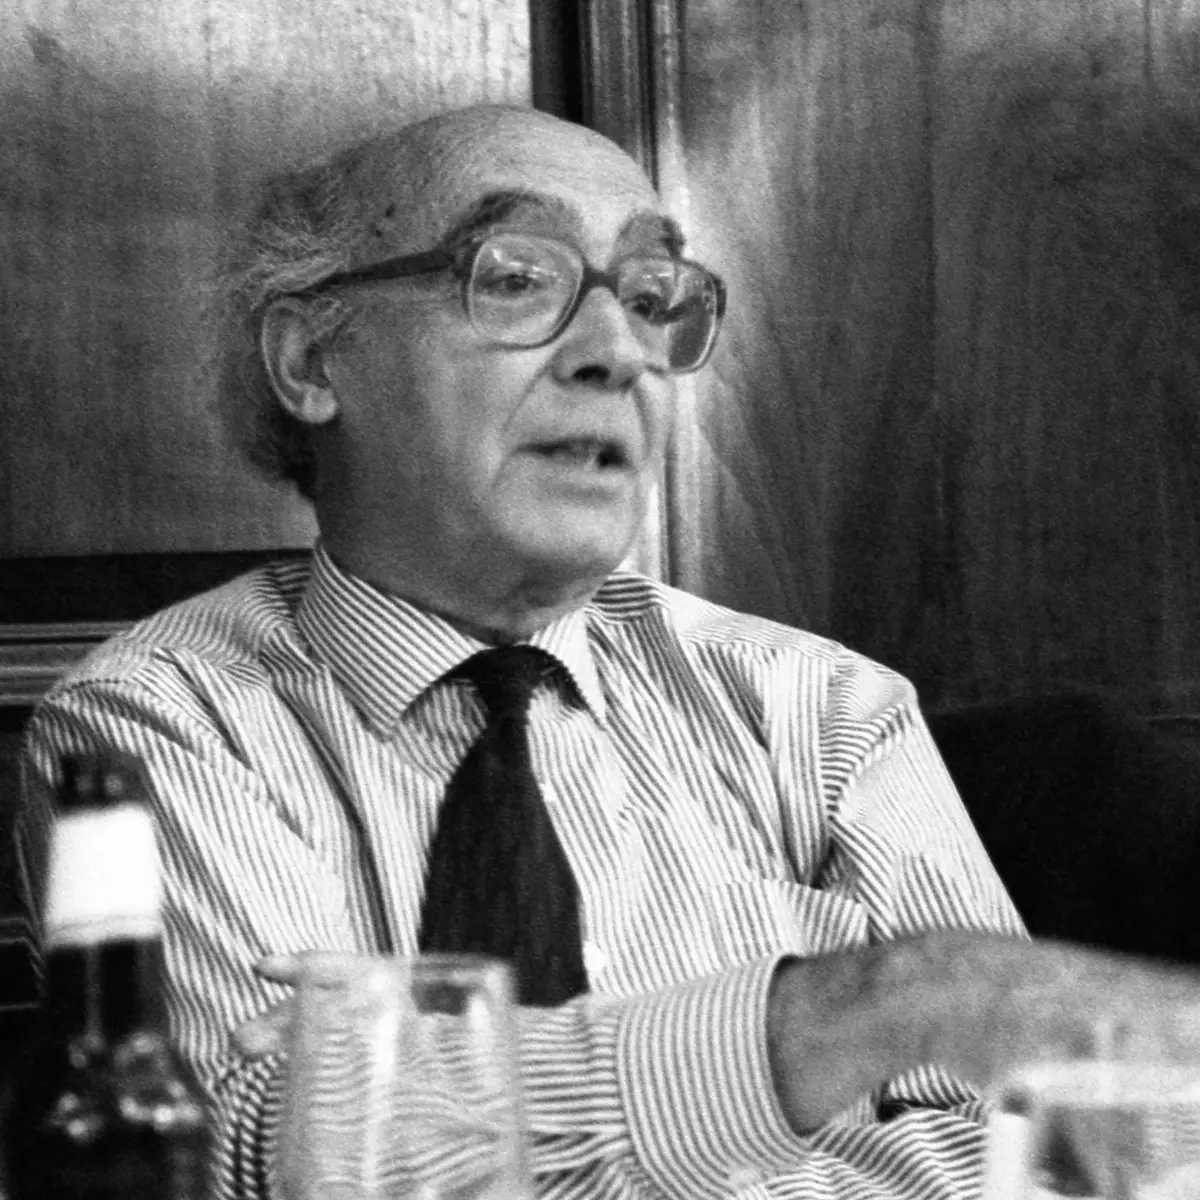 As 7 Vidas de José Saramago - Fundação José Saramago